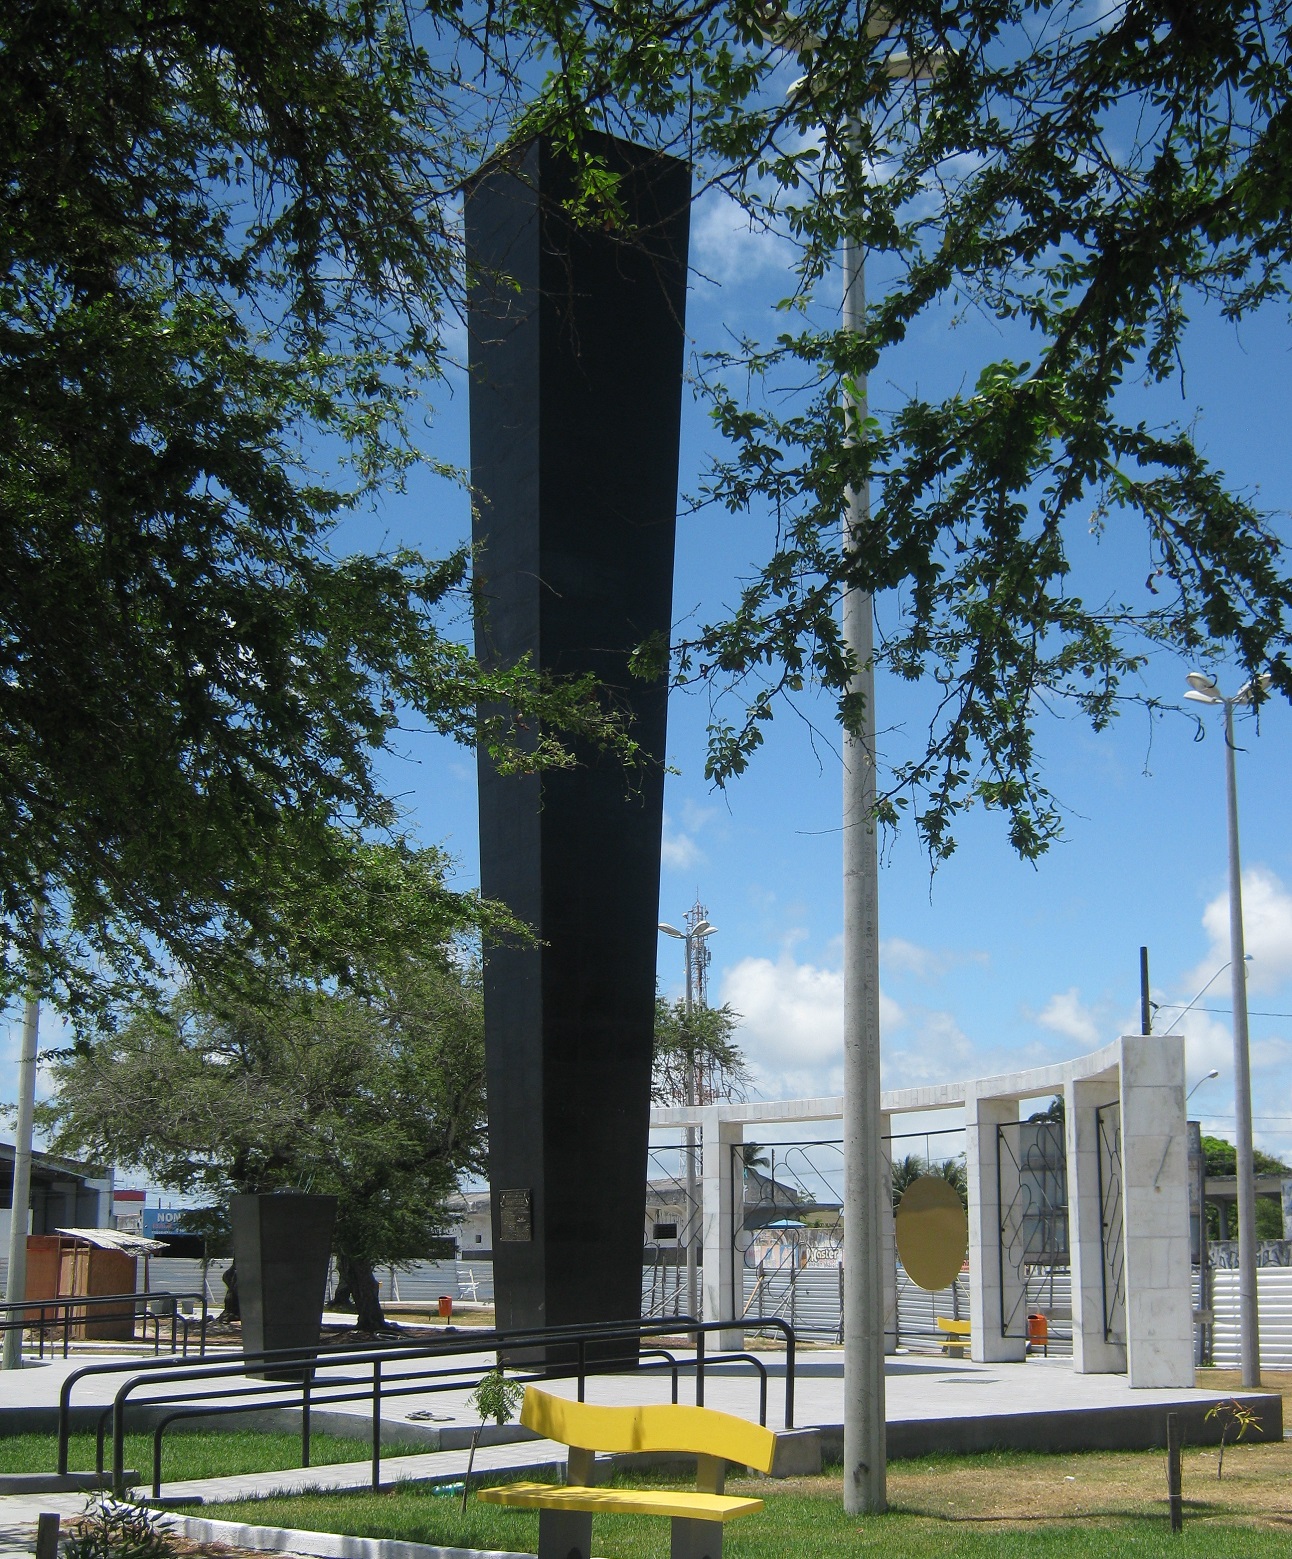 Monumento em homenagem aos expedicionários, na Praça dos Expedicionários em Aracaju (SE)